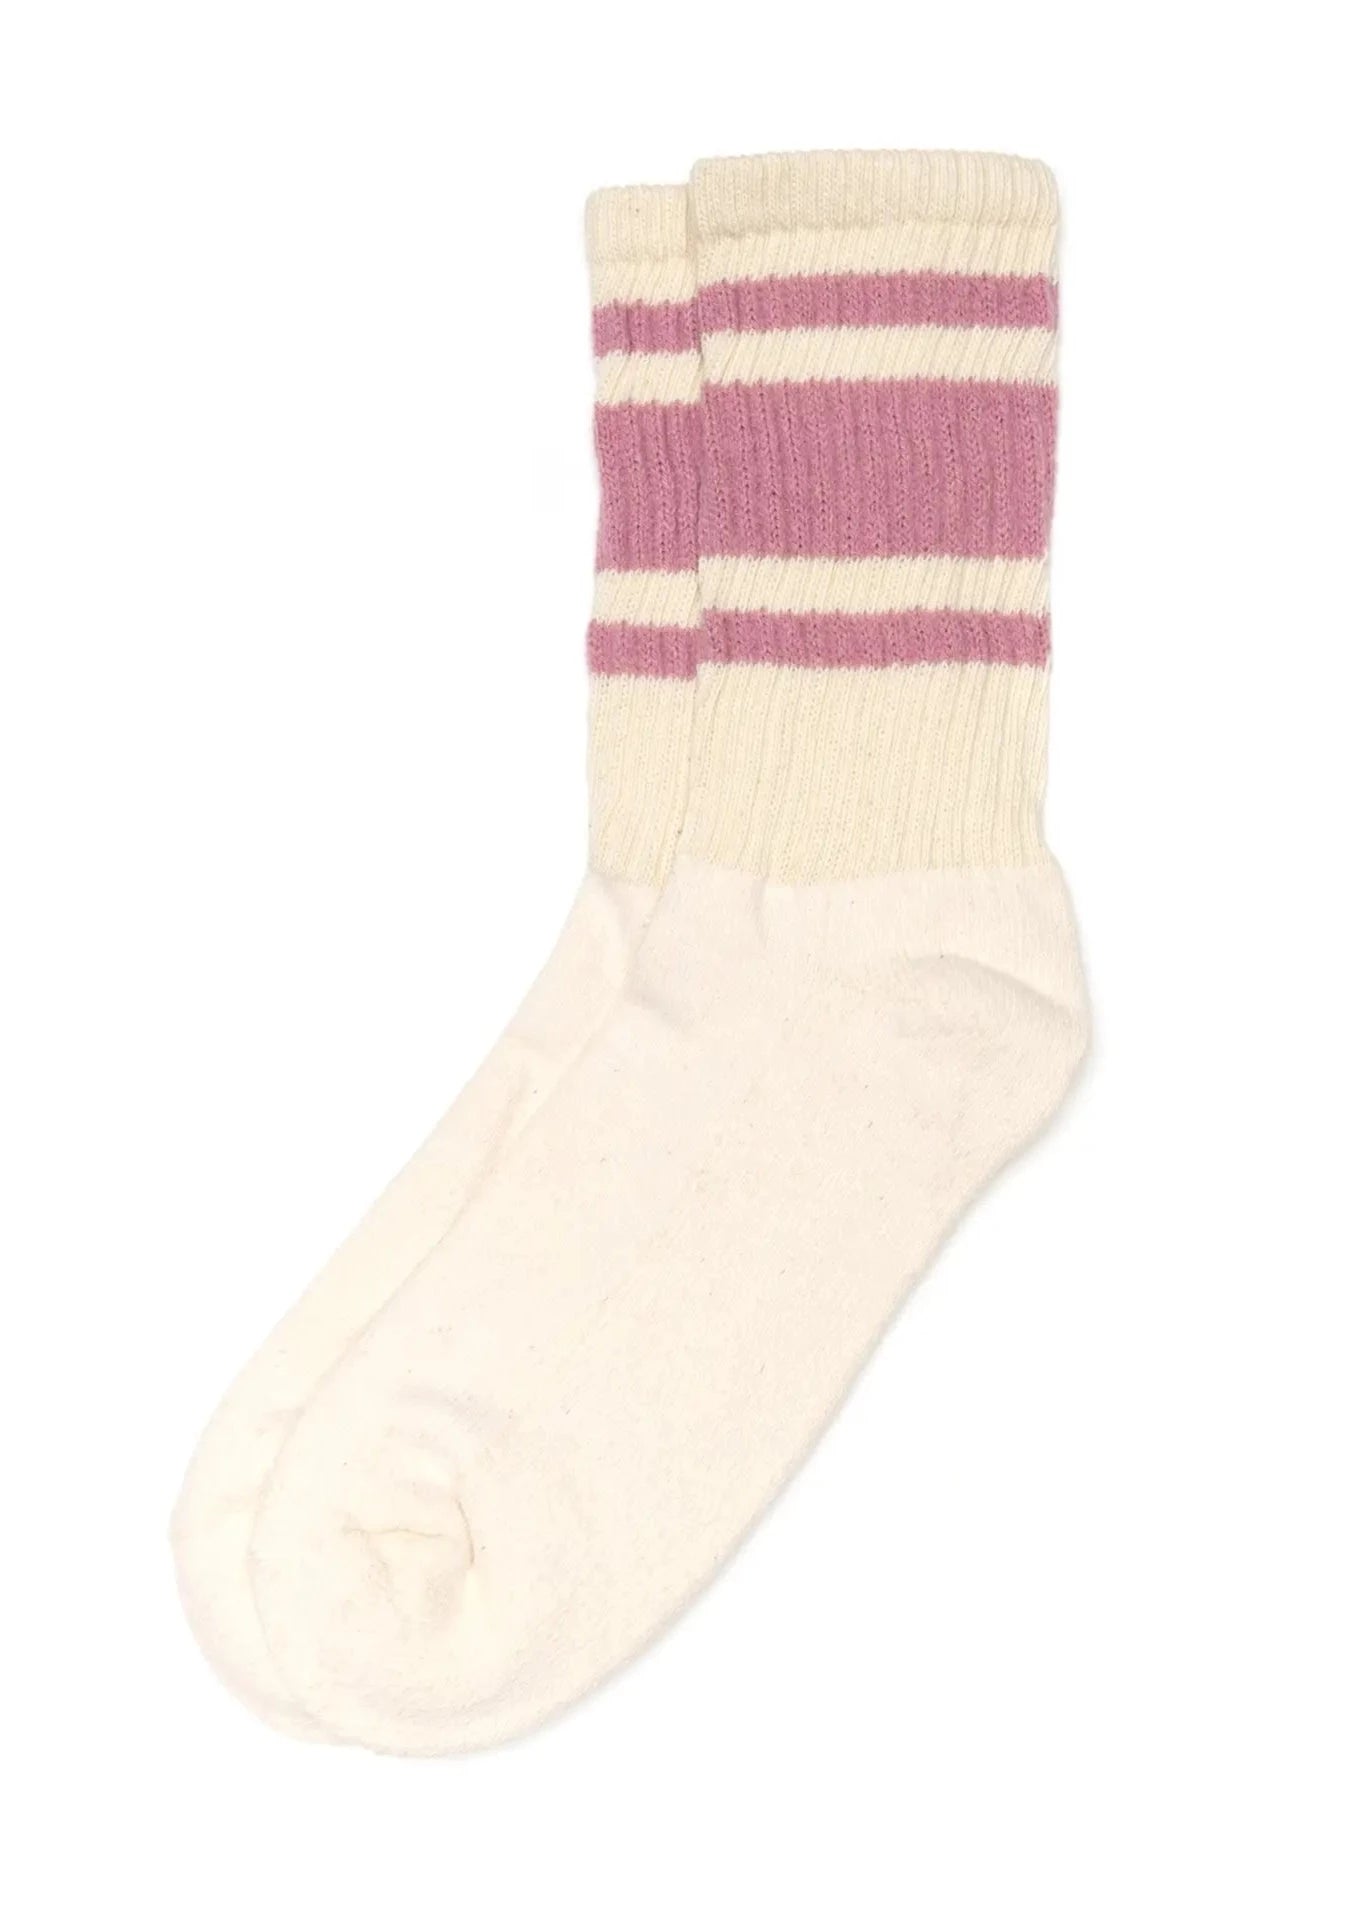 The Mono Stripe Socks // Rose